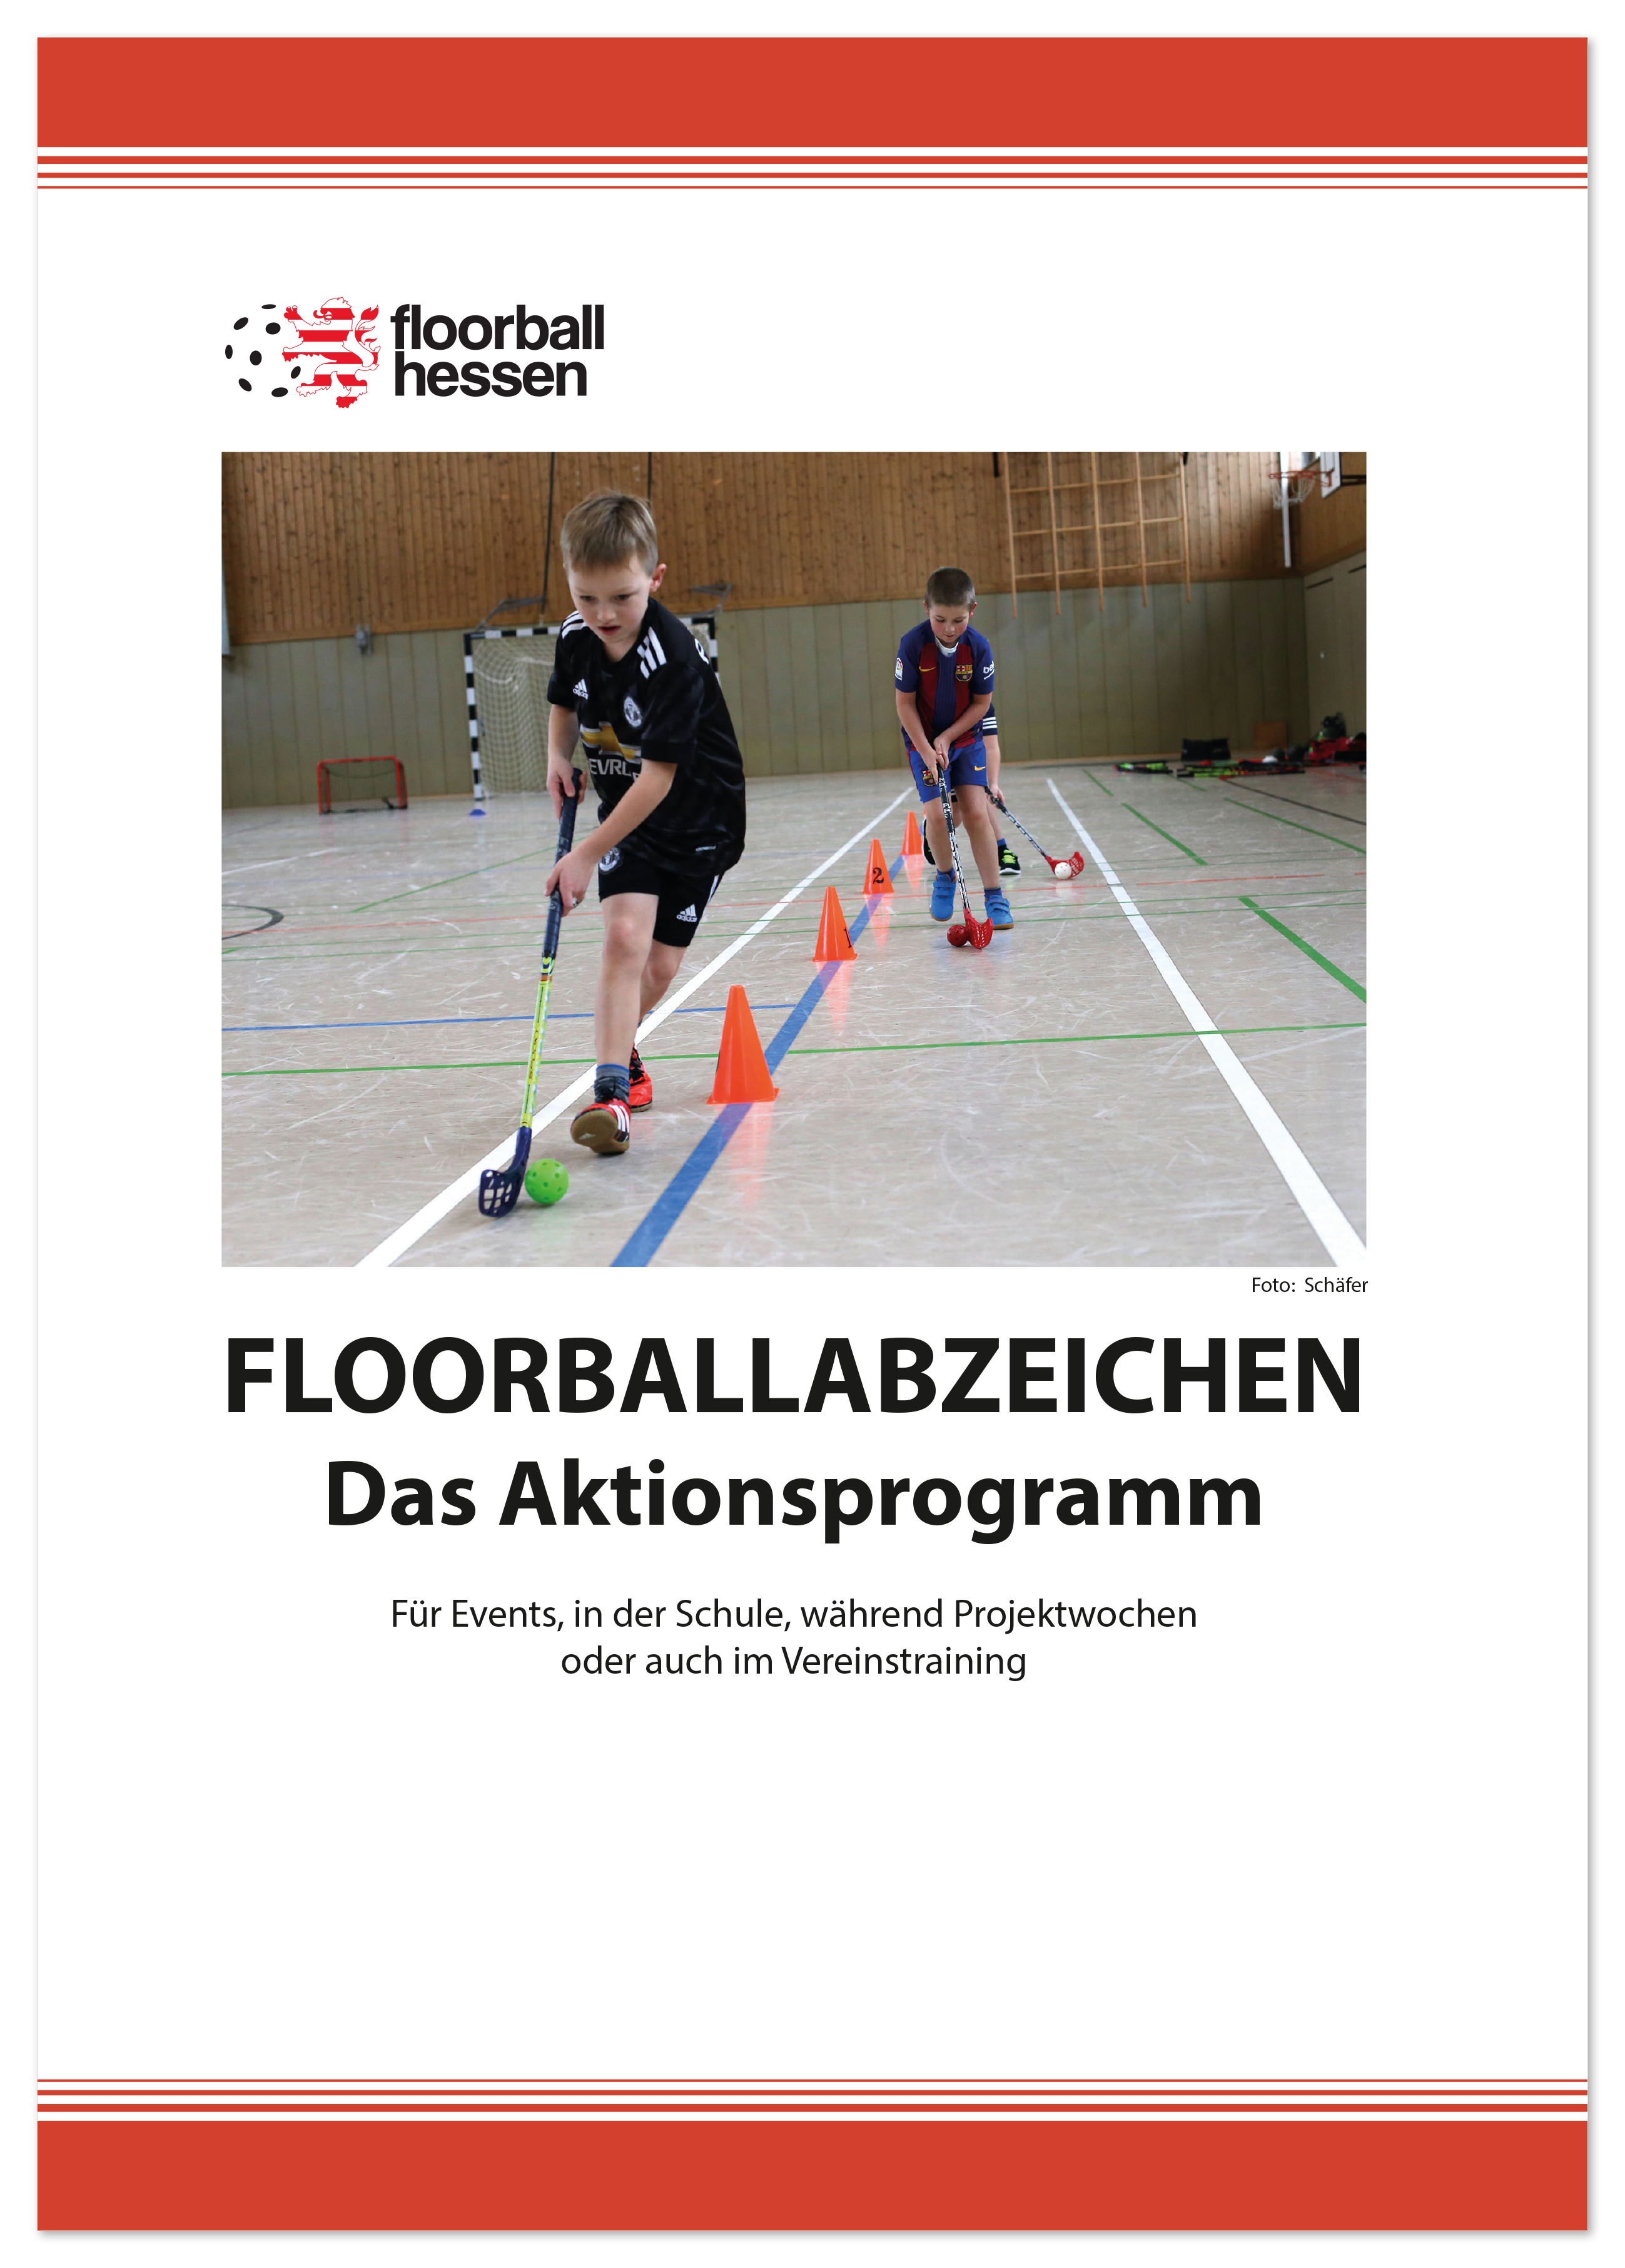 FVH IFF Floorballabzeichen im Schulsport